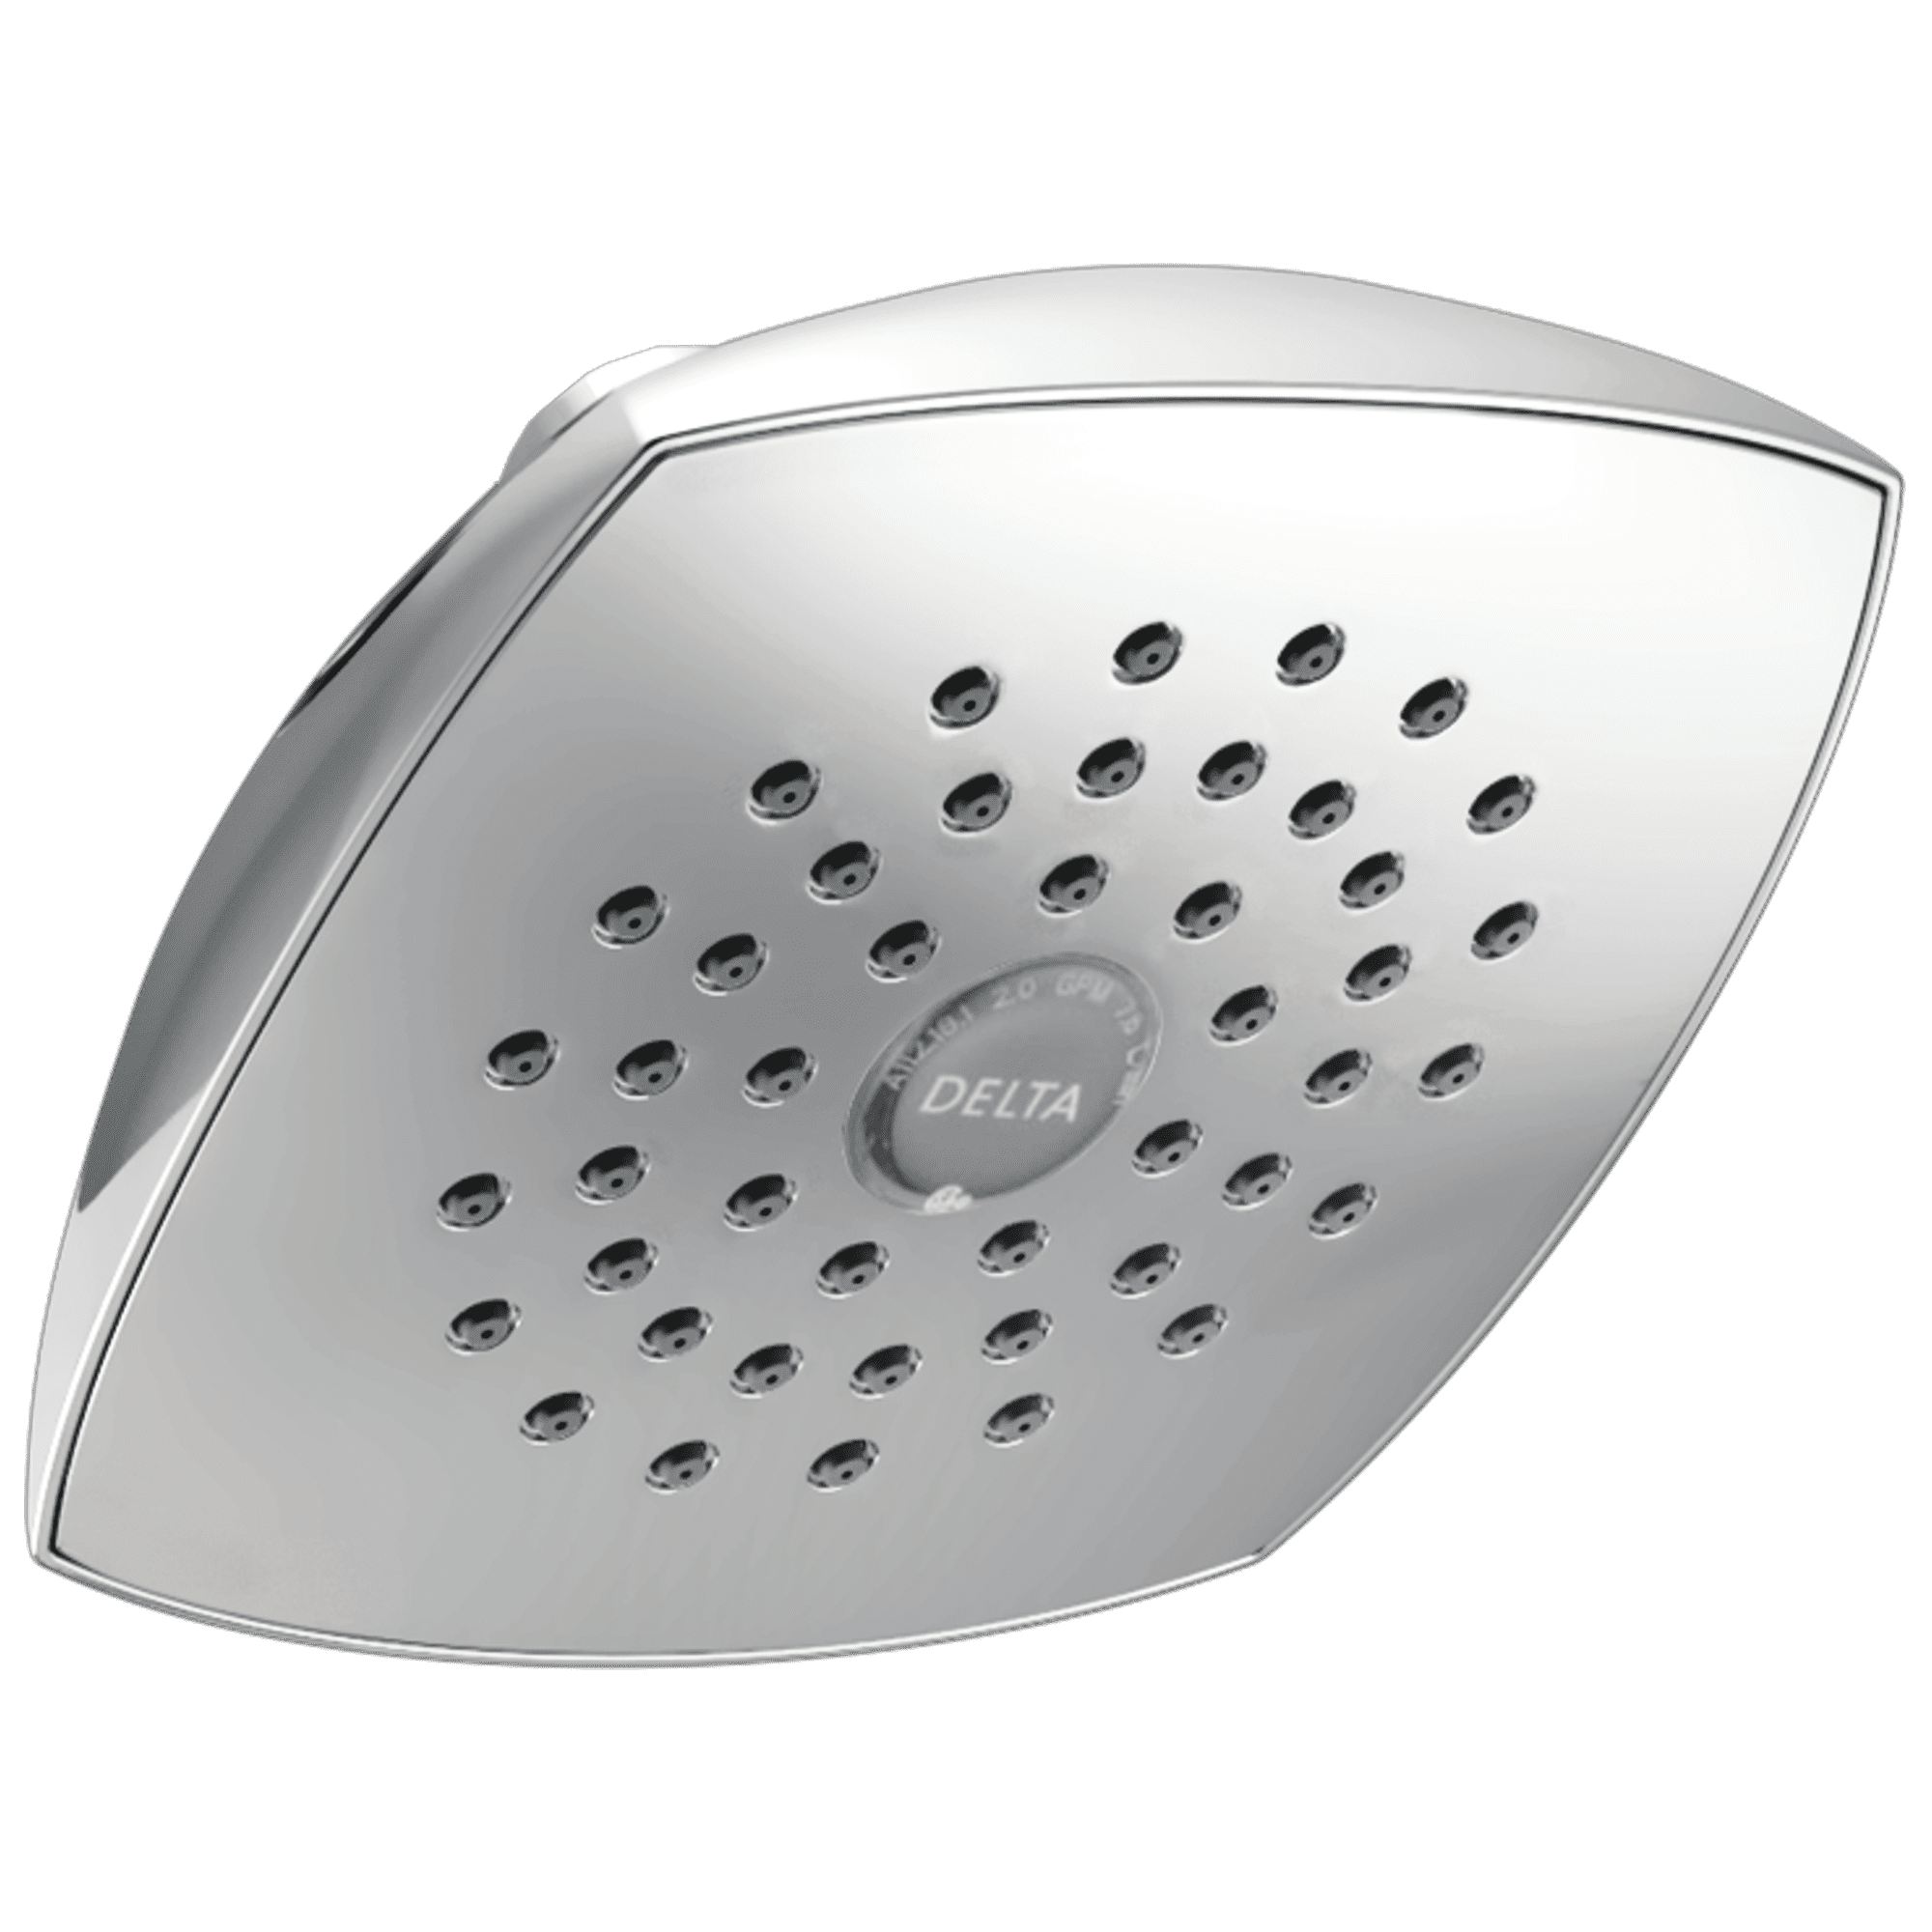 Rp64859 Chrome Raincan Single-setting Touch-clean Shower Head